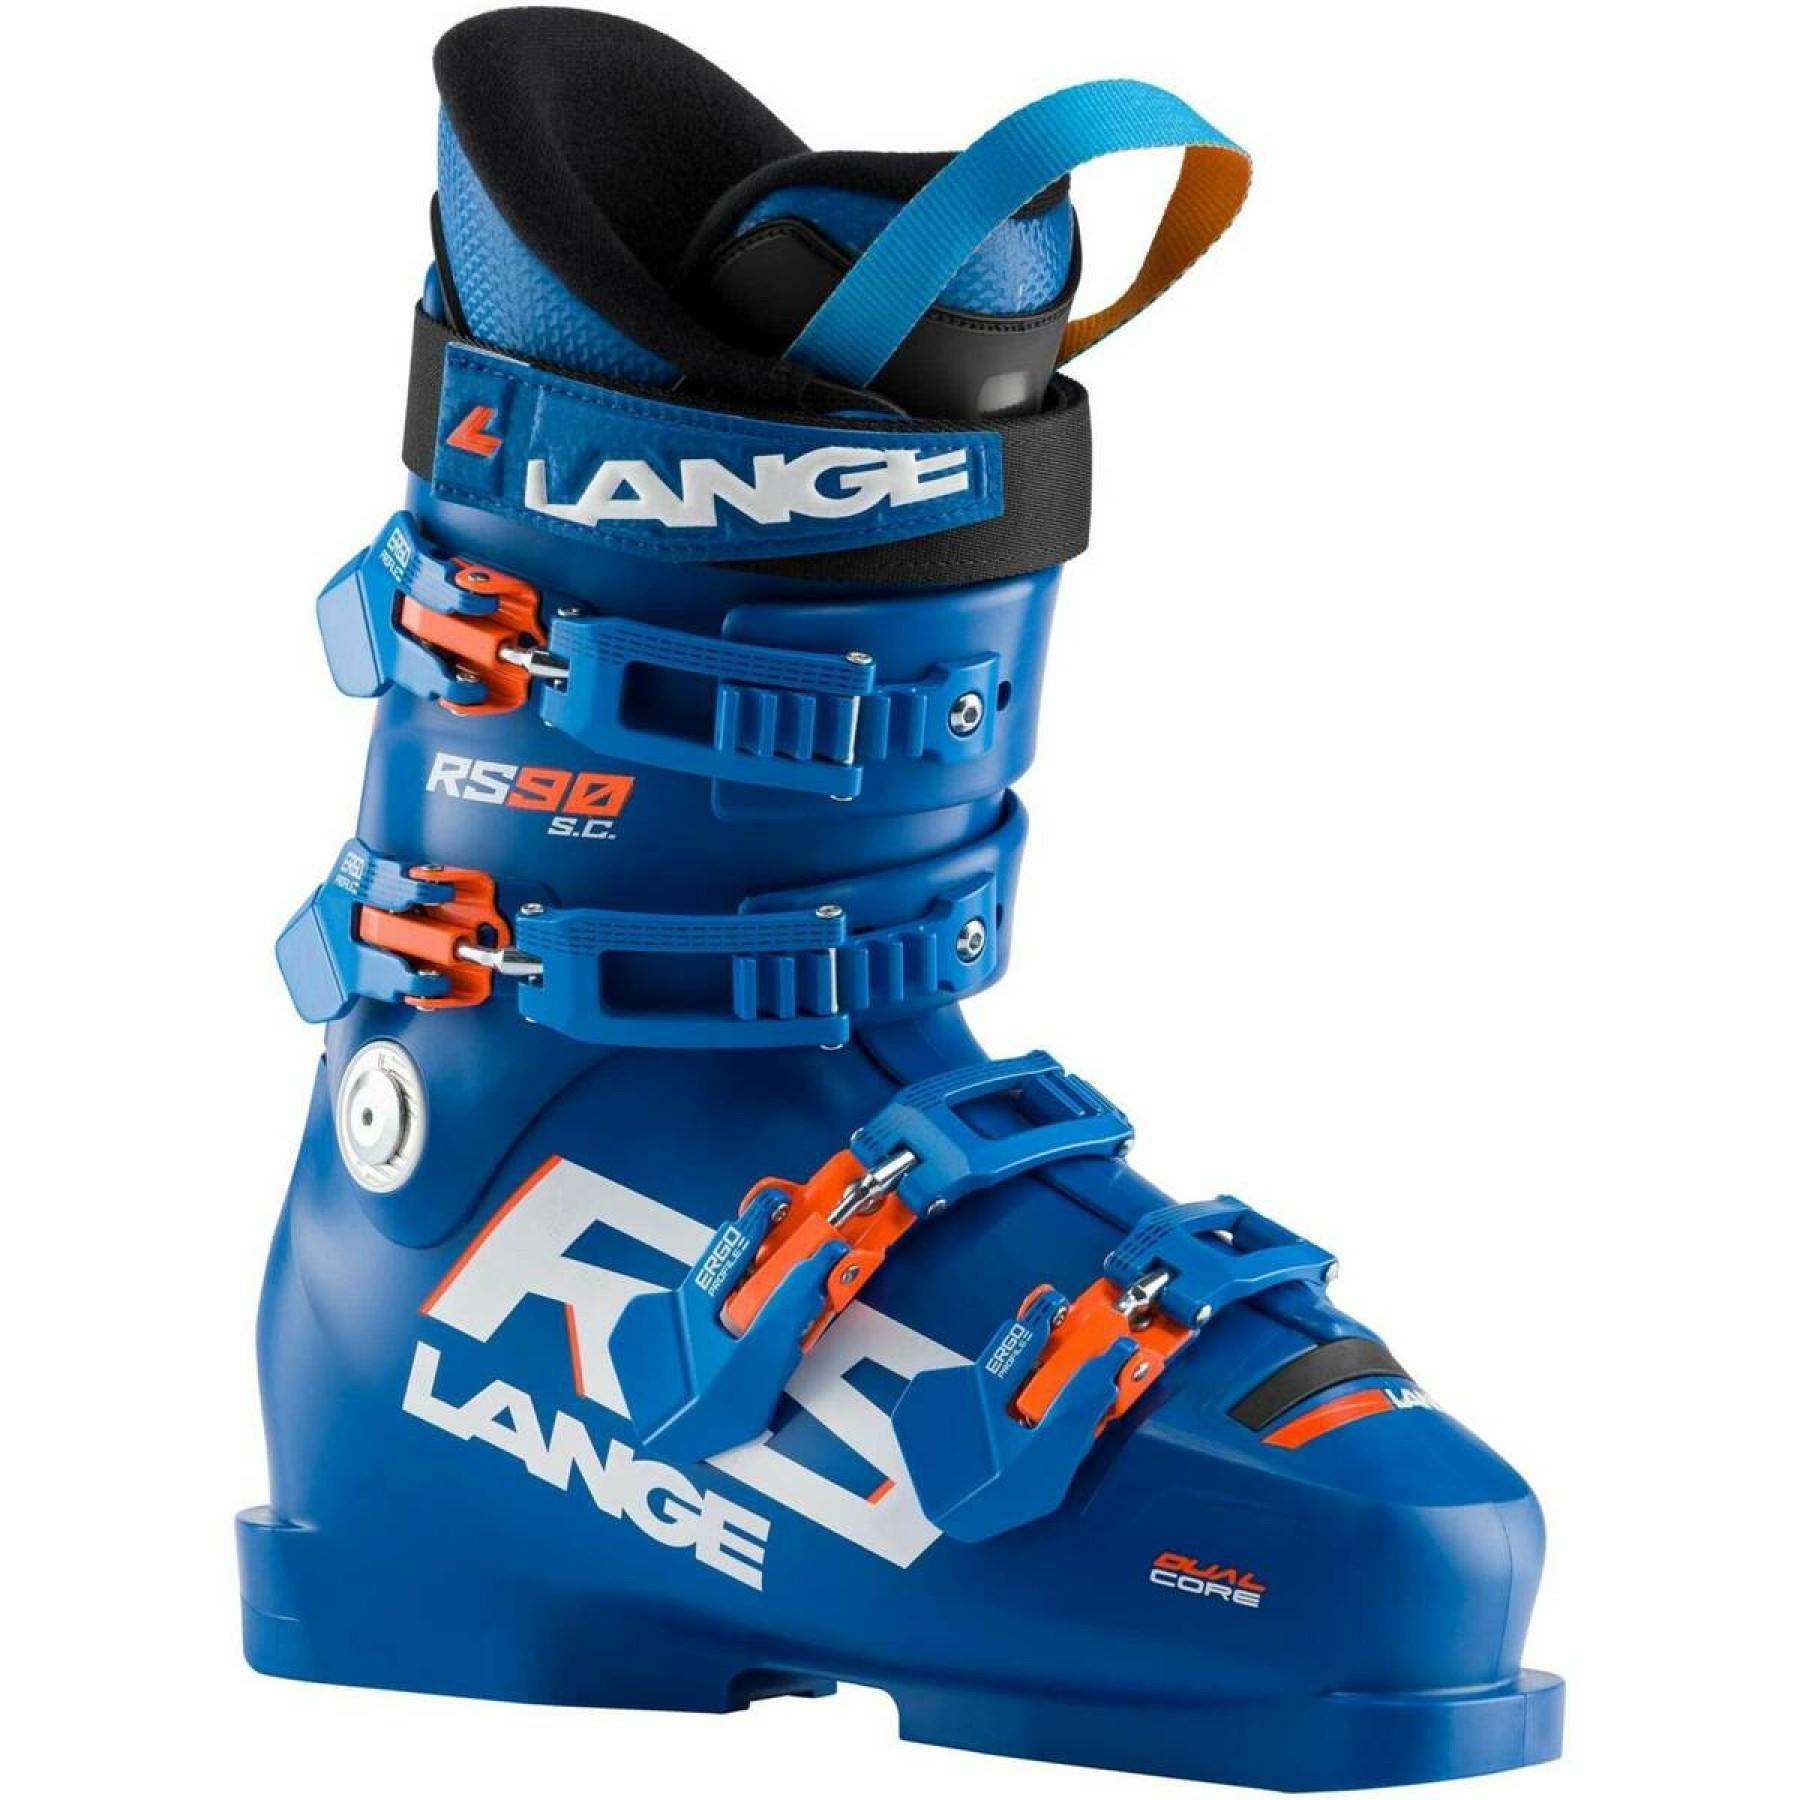 Zapatillas de esquí niños Lange rs 90 s.c.